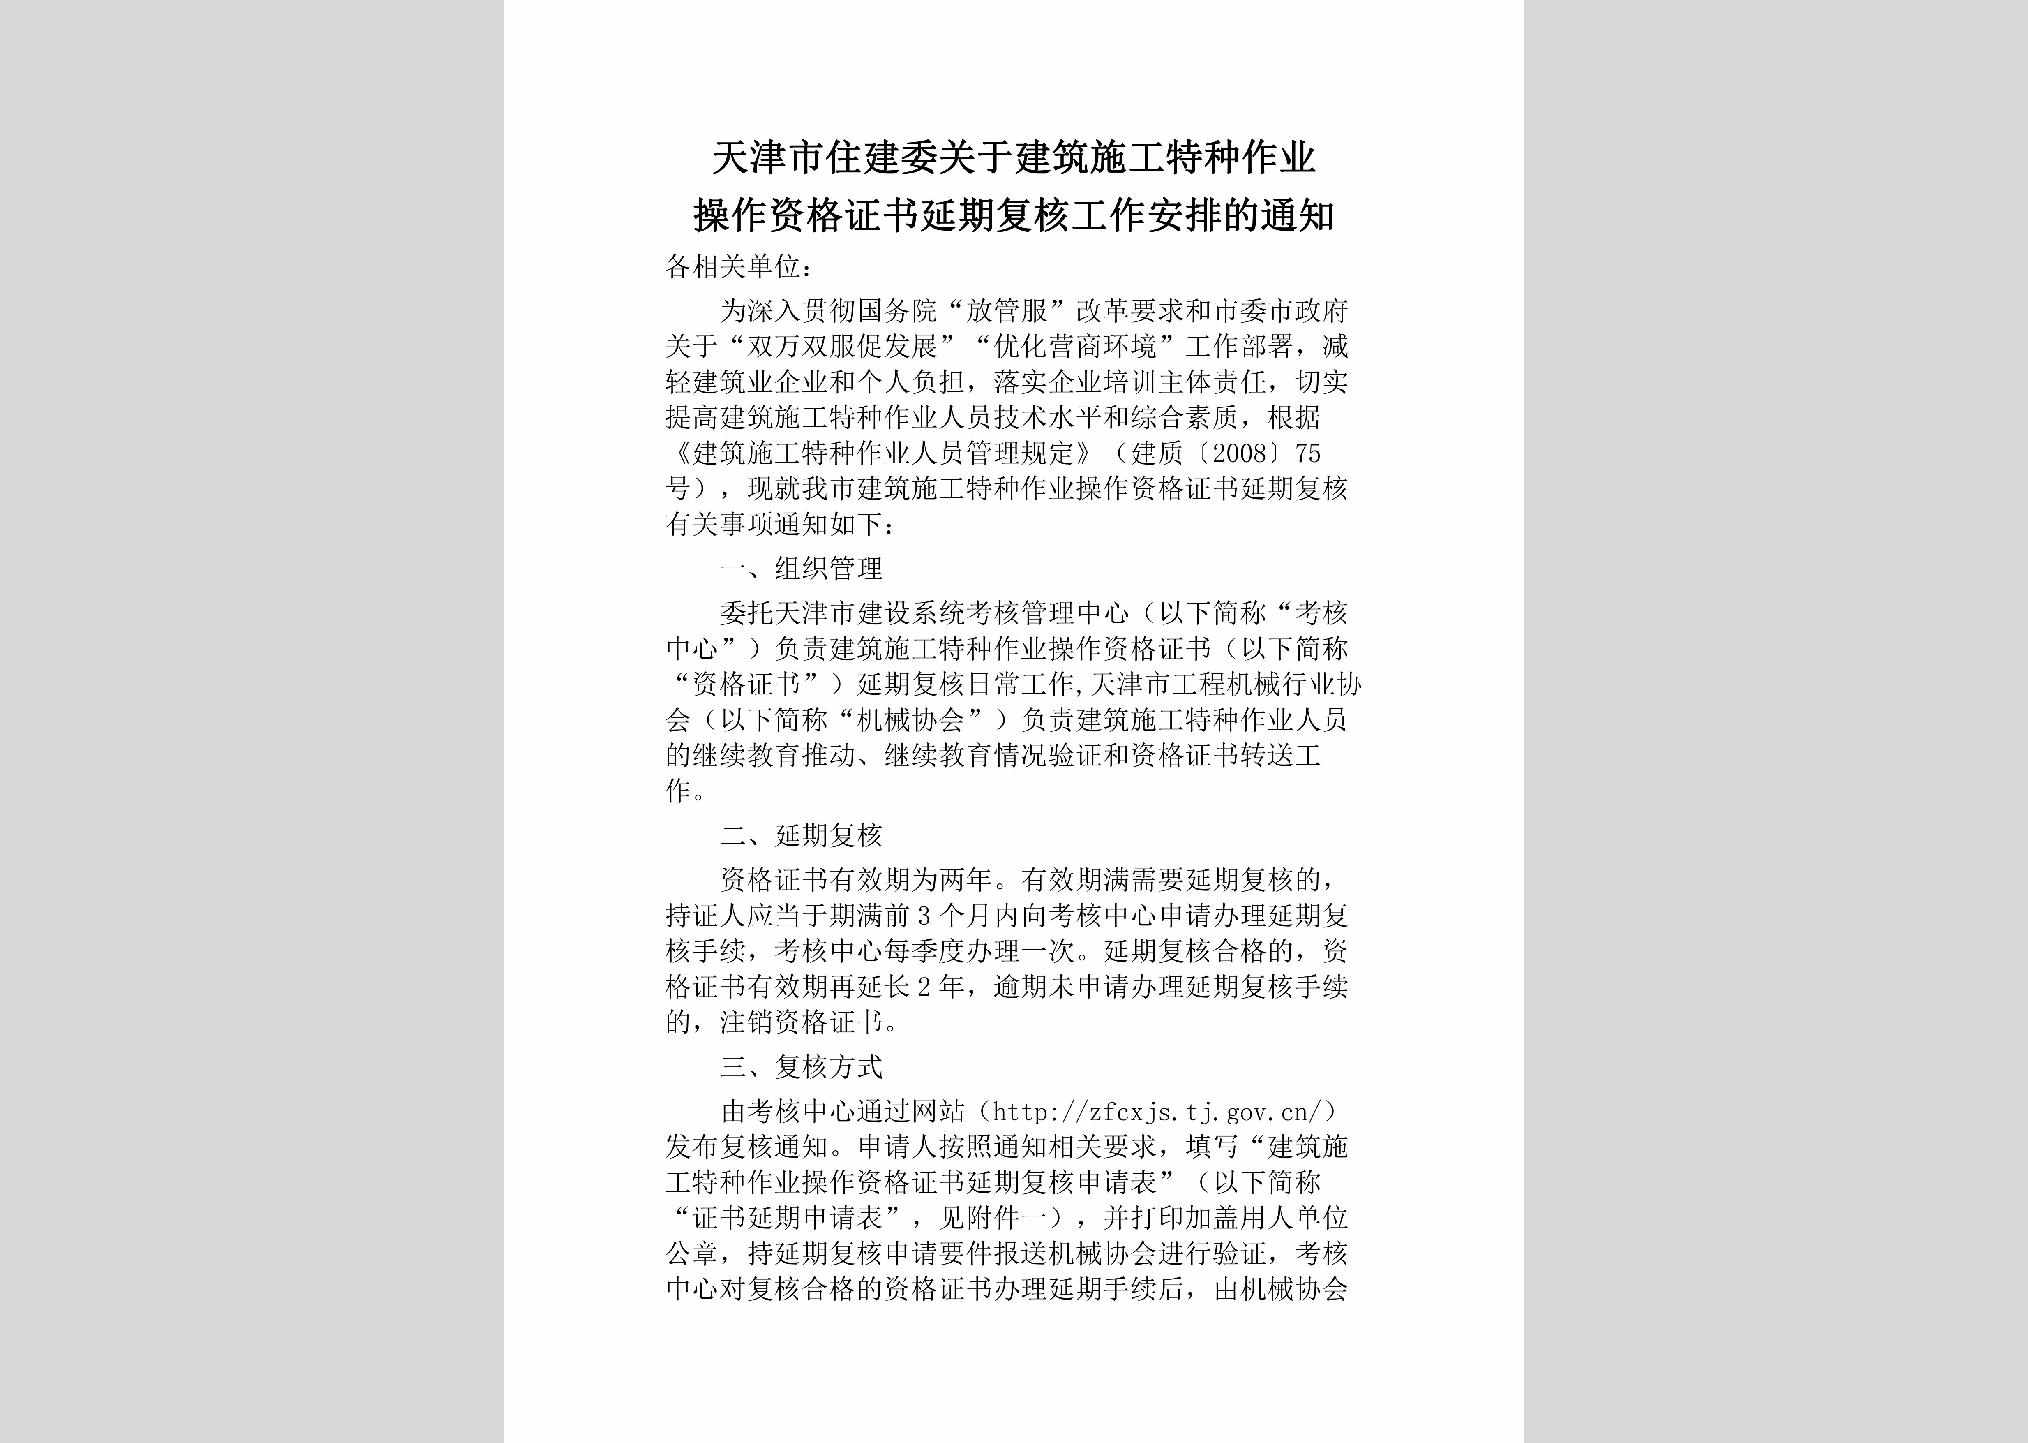 TJ-JZSGTZZY-2018：天津市住建委关于建筑施工特种作业操作资格证书延期复核工作安排的通知